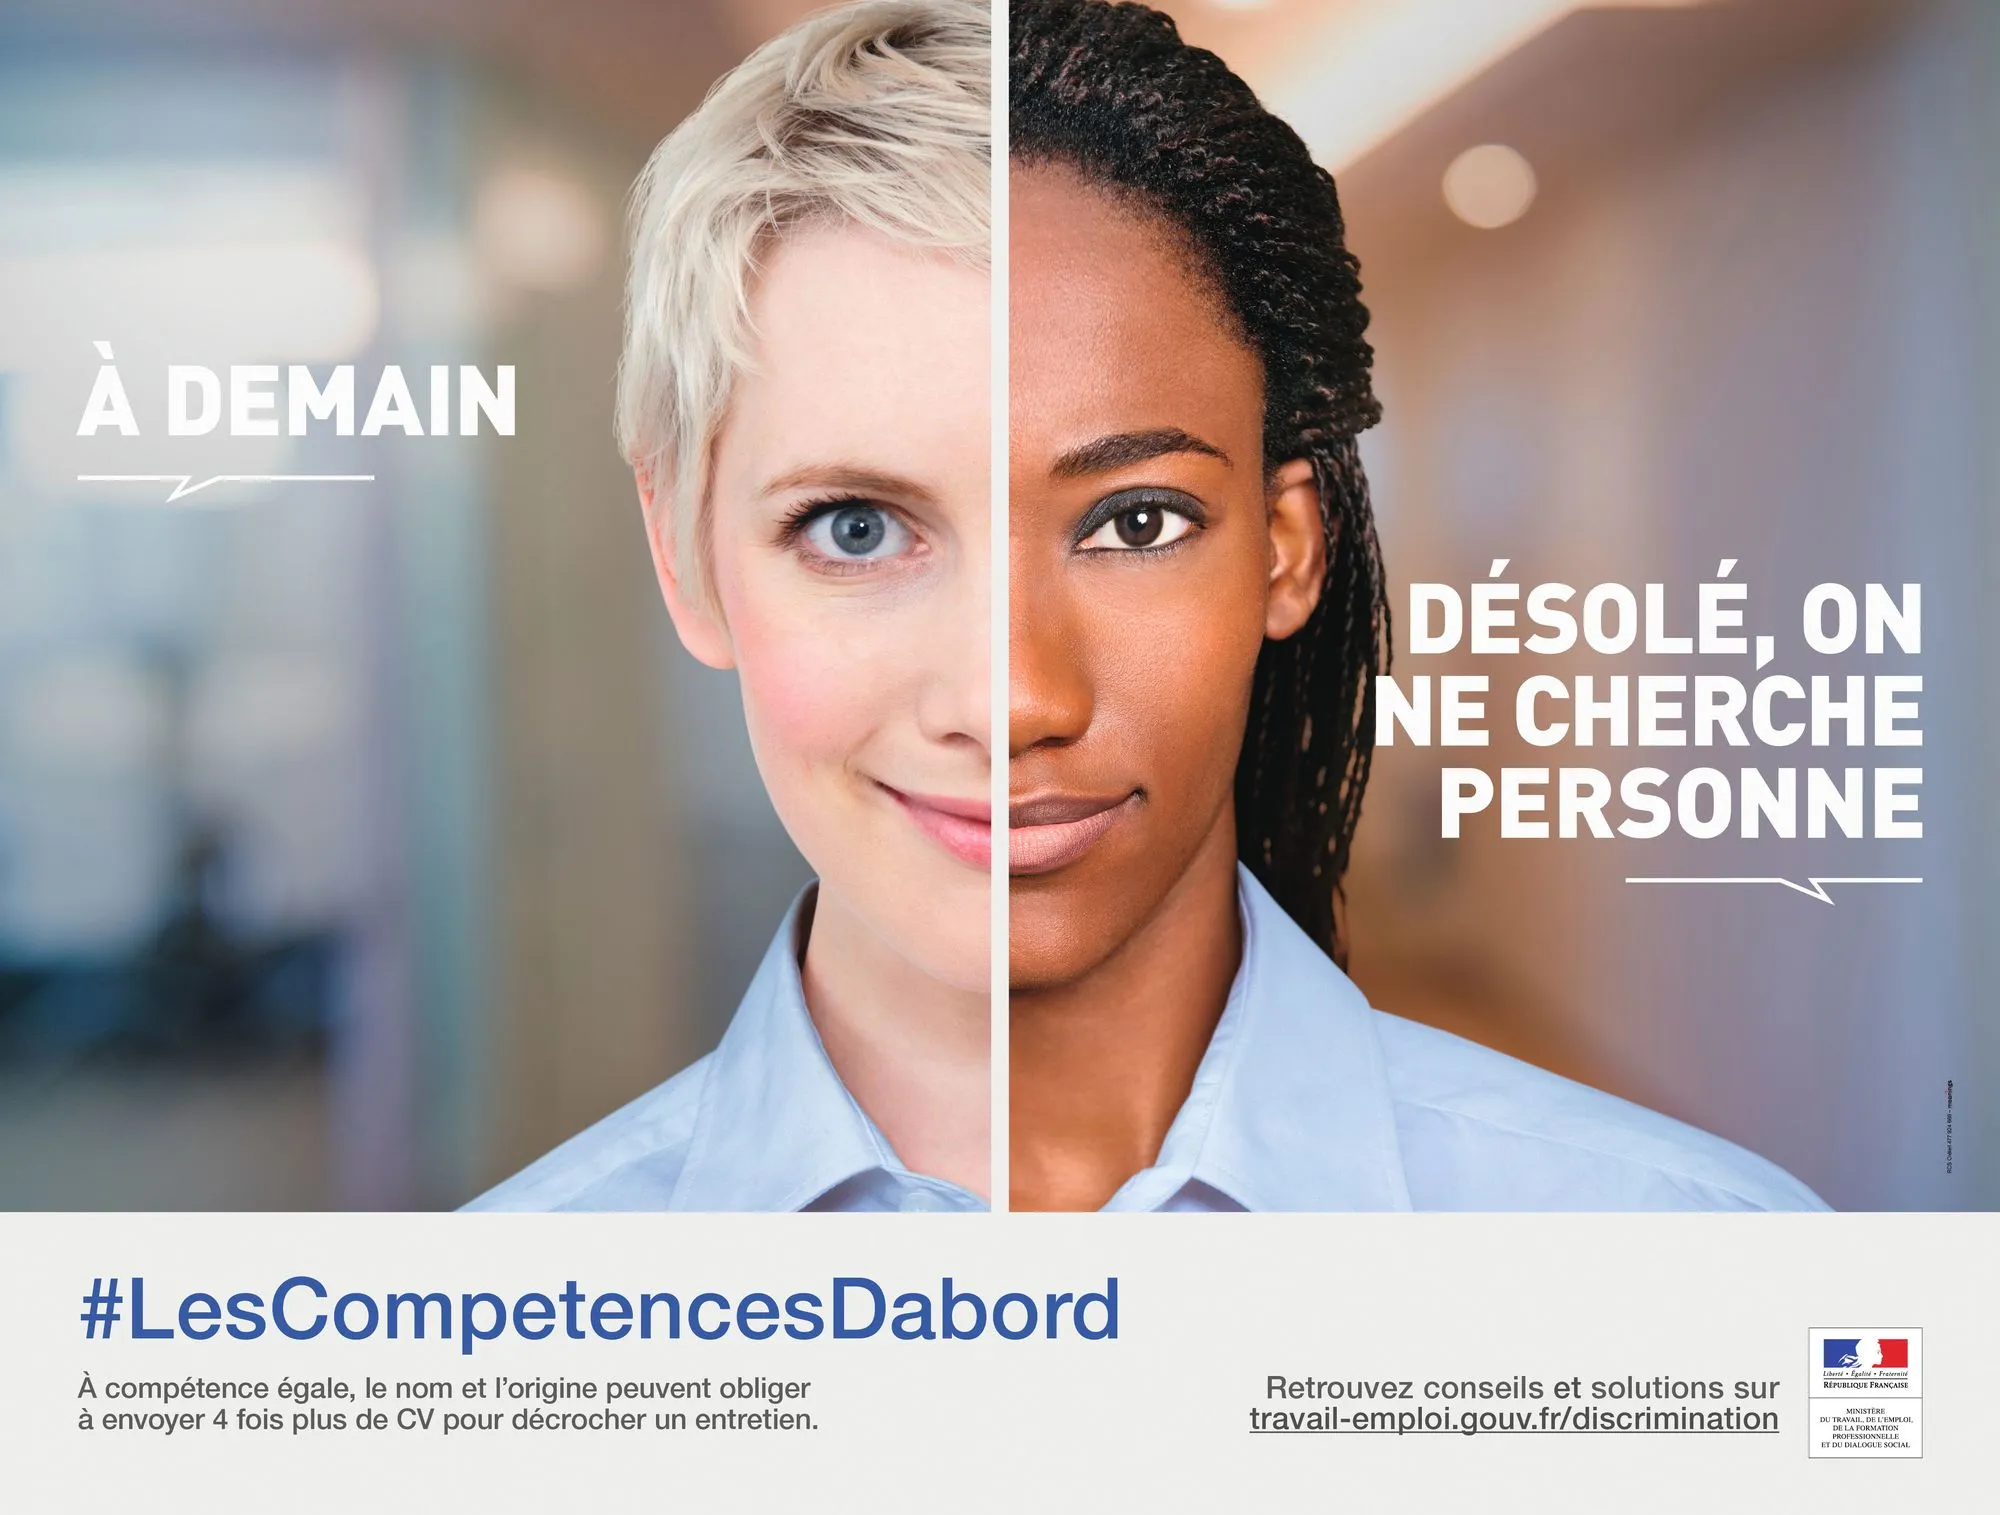 Campagne d'affichage du ministère du Travail, de l'Emploi, de la Formation professionnelle et du Dialogue social, « #LesCompetencesDabord », avril 2016.